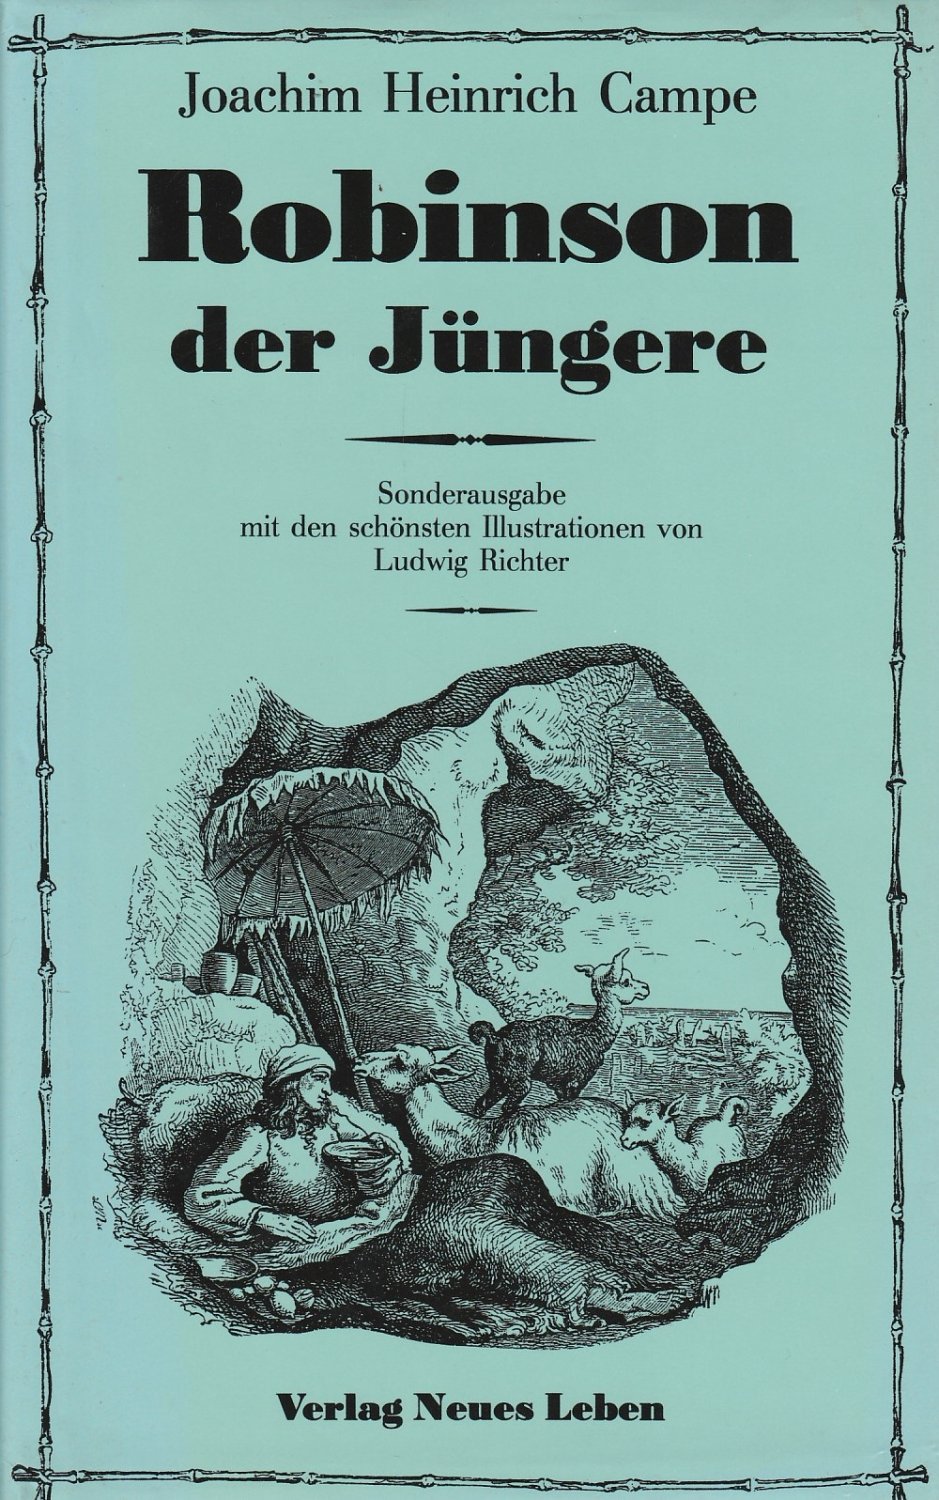 Couverture du roman de Joachim Heinrich Campe "Robinson der Jüngere" de l'éditeur Verlag Neues Leben